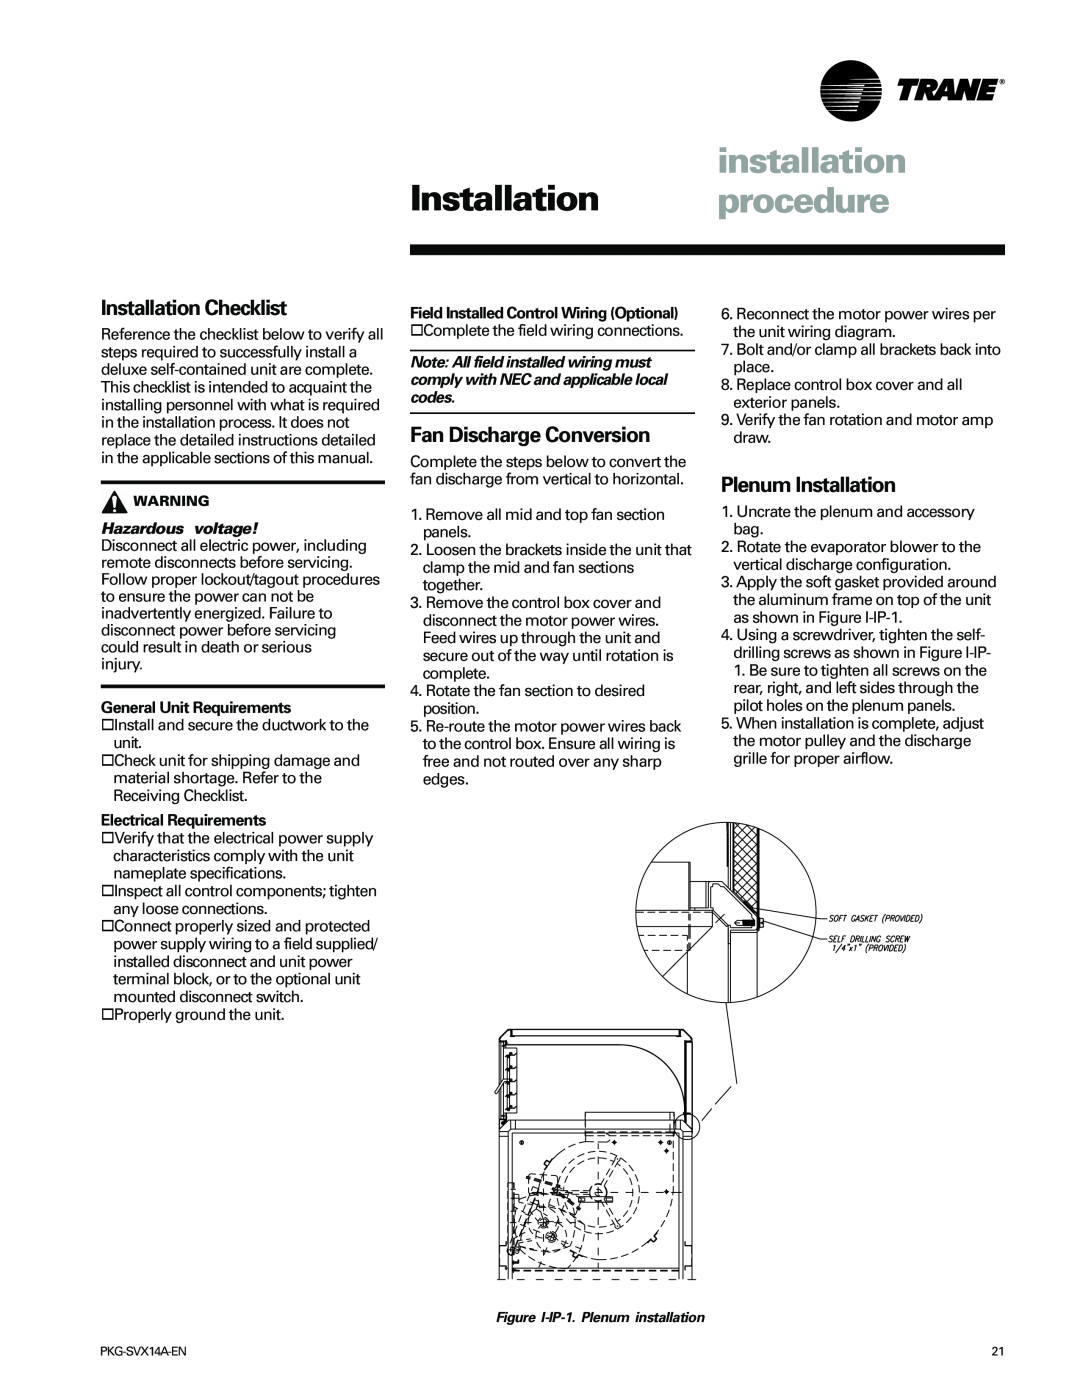 Trane SCRH installation, Installation procedure, Installation Checklist, Fan Discharge Conversion, Plenum Installation 